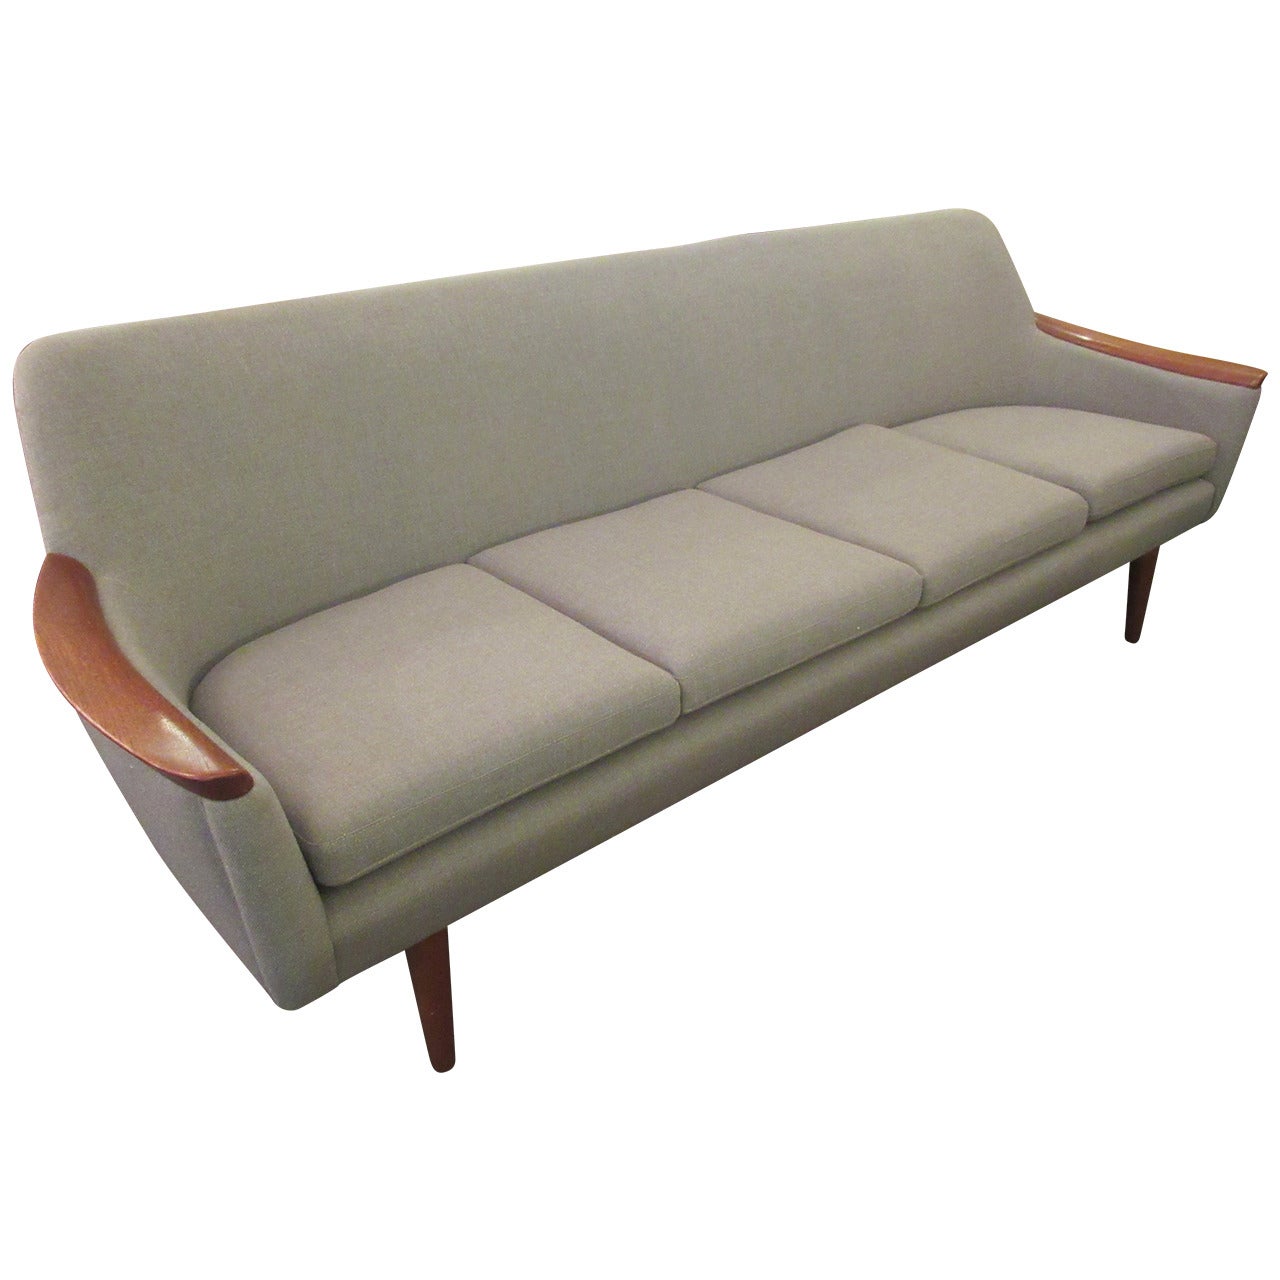 1960s Danish Sofa